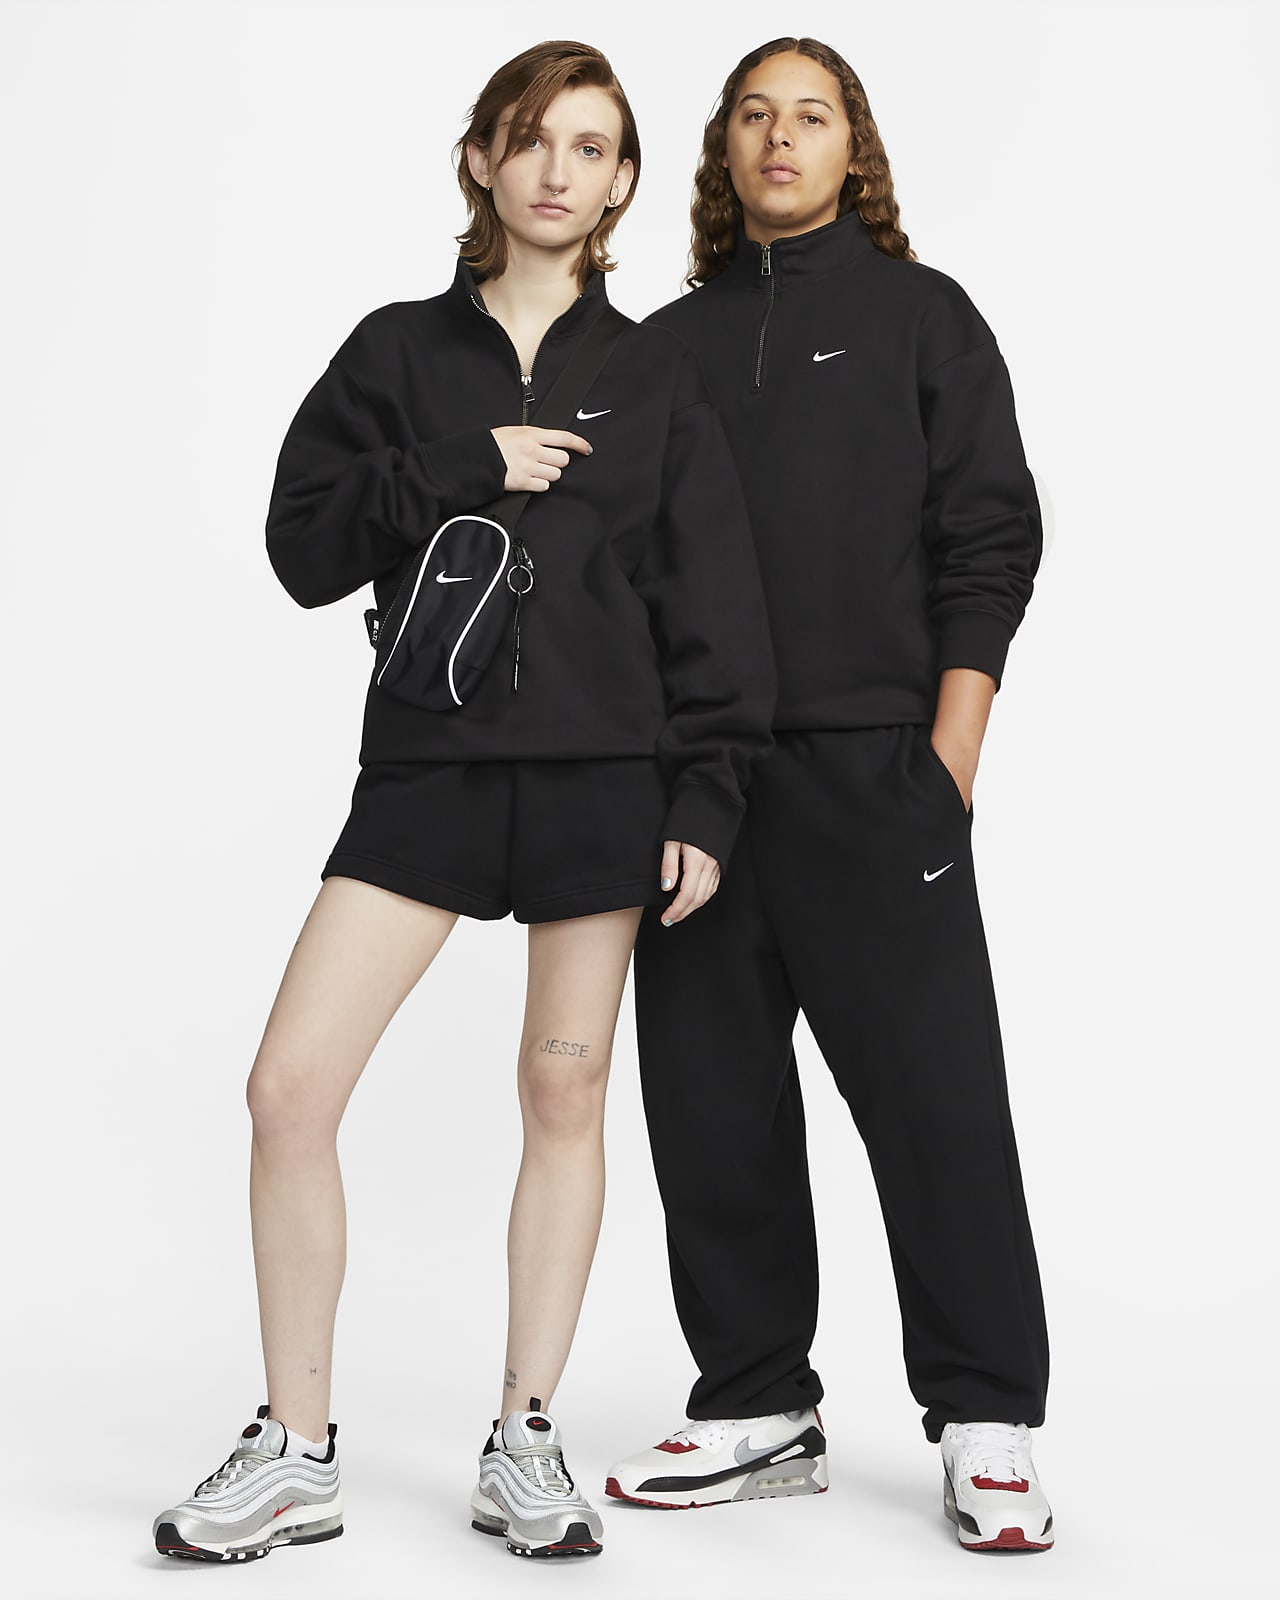 Nike Solo Swoosh Men's 1/4-Zip Top, Black, Medium 